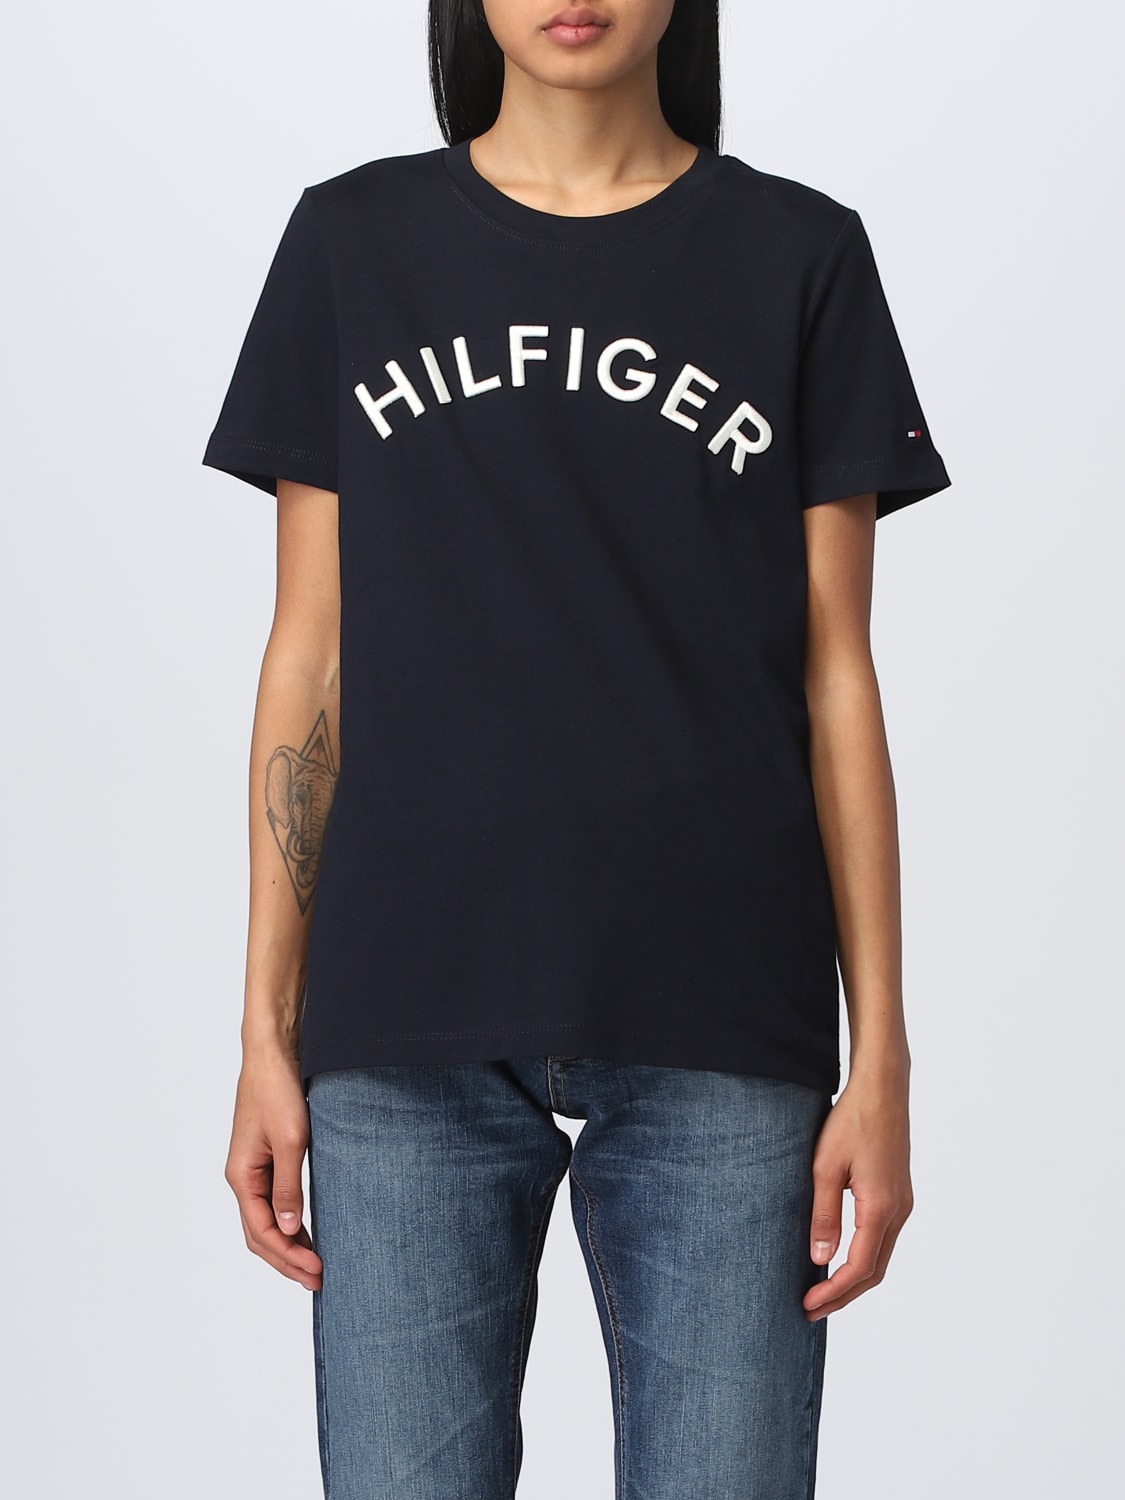 TOMMY HILFIGER: Camiseta para mujer, Azul Camiseta Tommy Hilfiger WW0WW37864 en línea en GIGLIO.COM